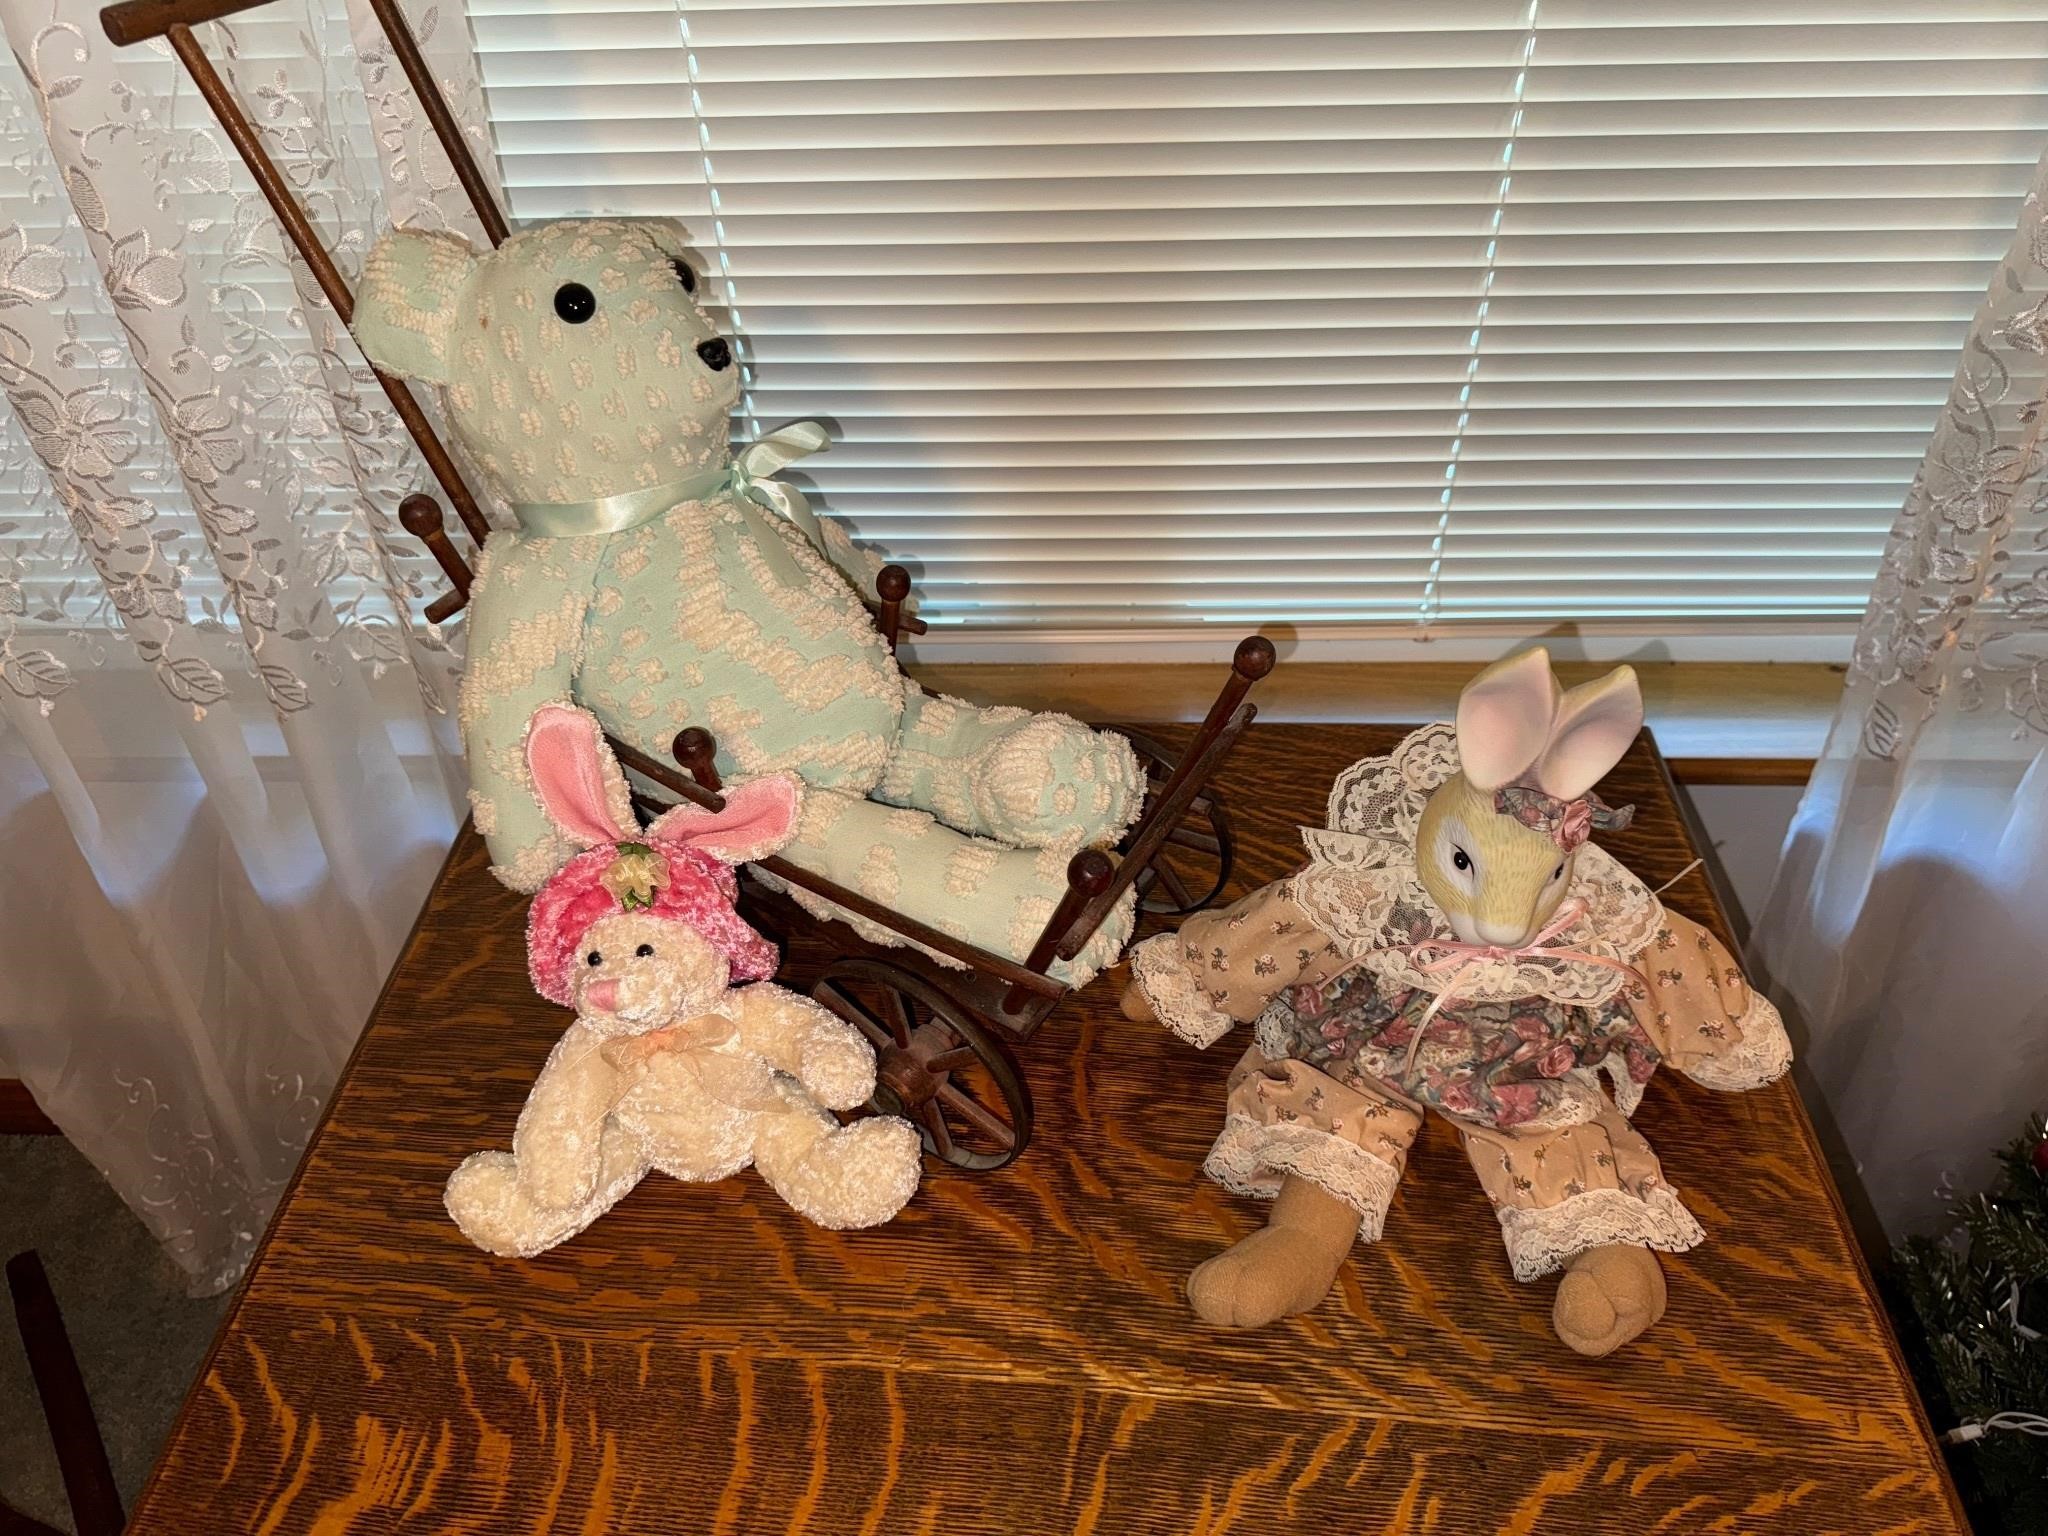 Stuffed Animals & Wooden Stroller/Pram